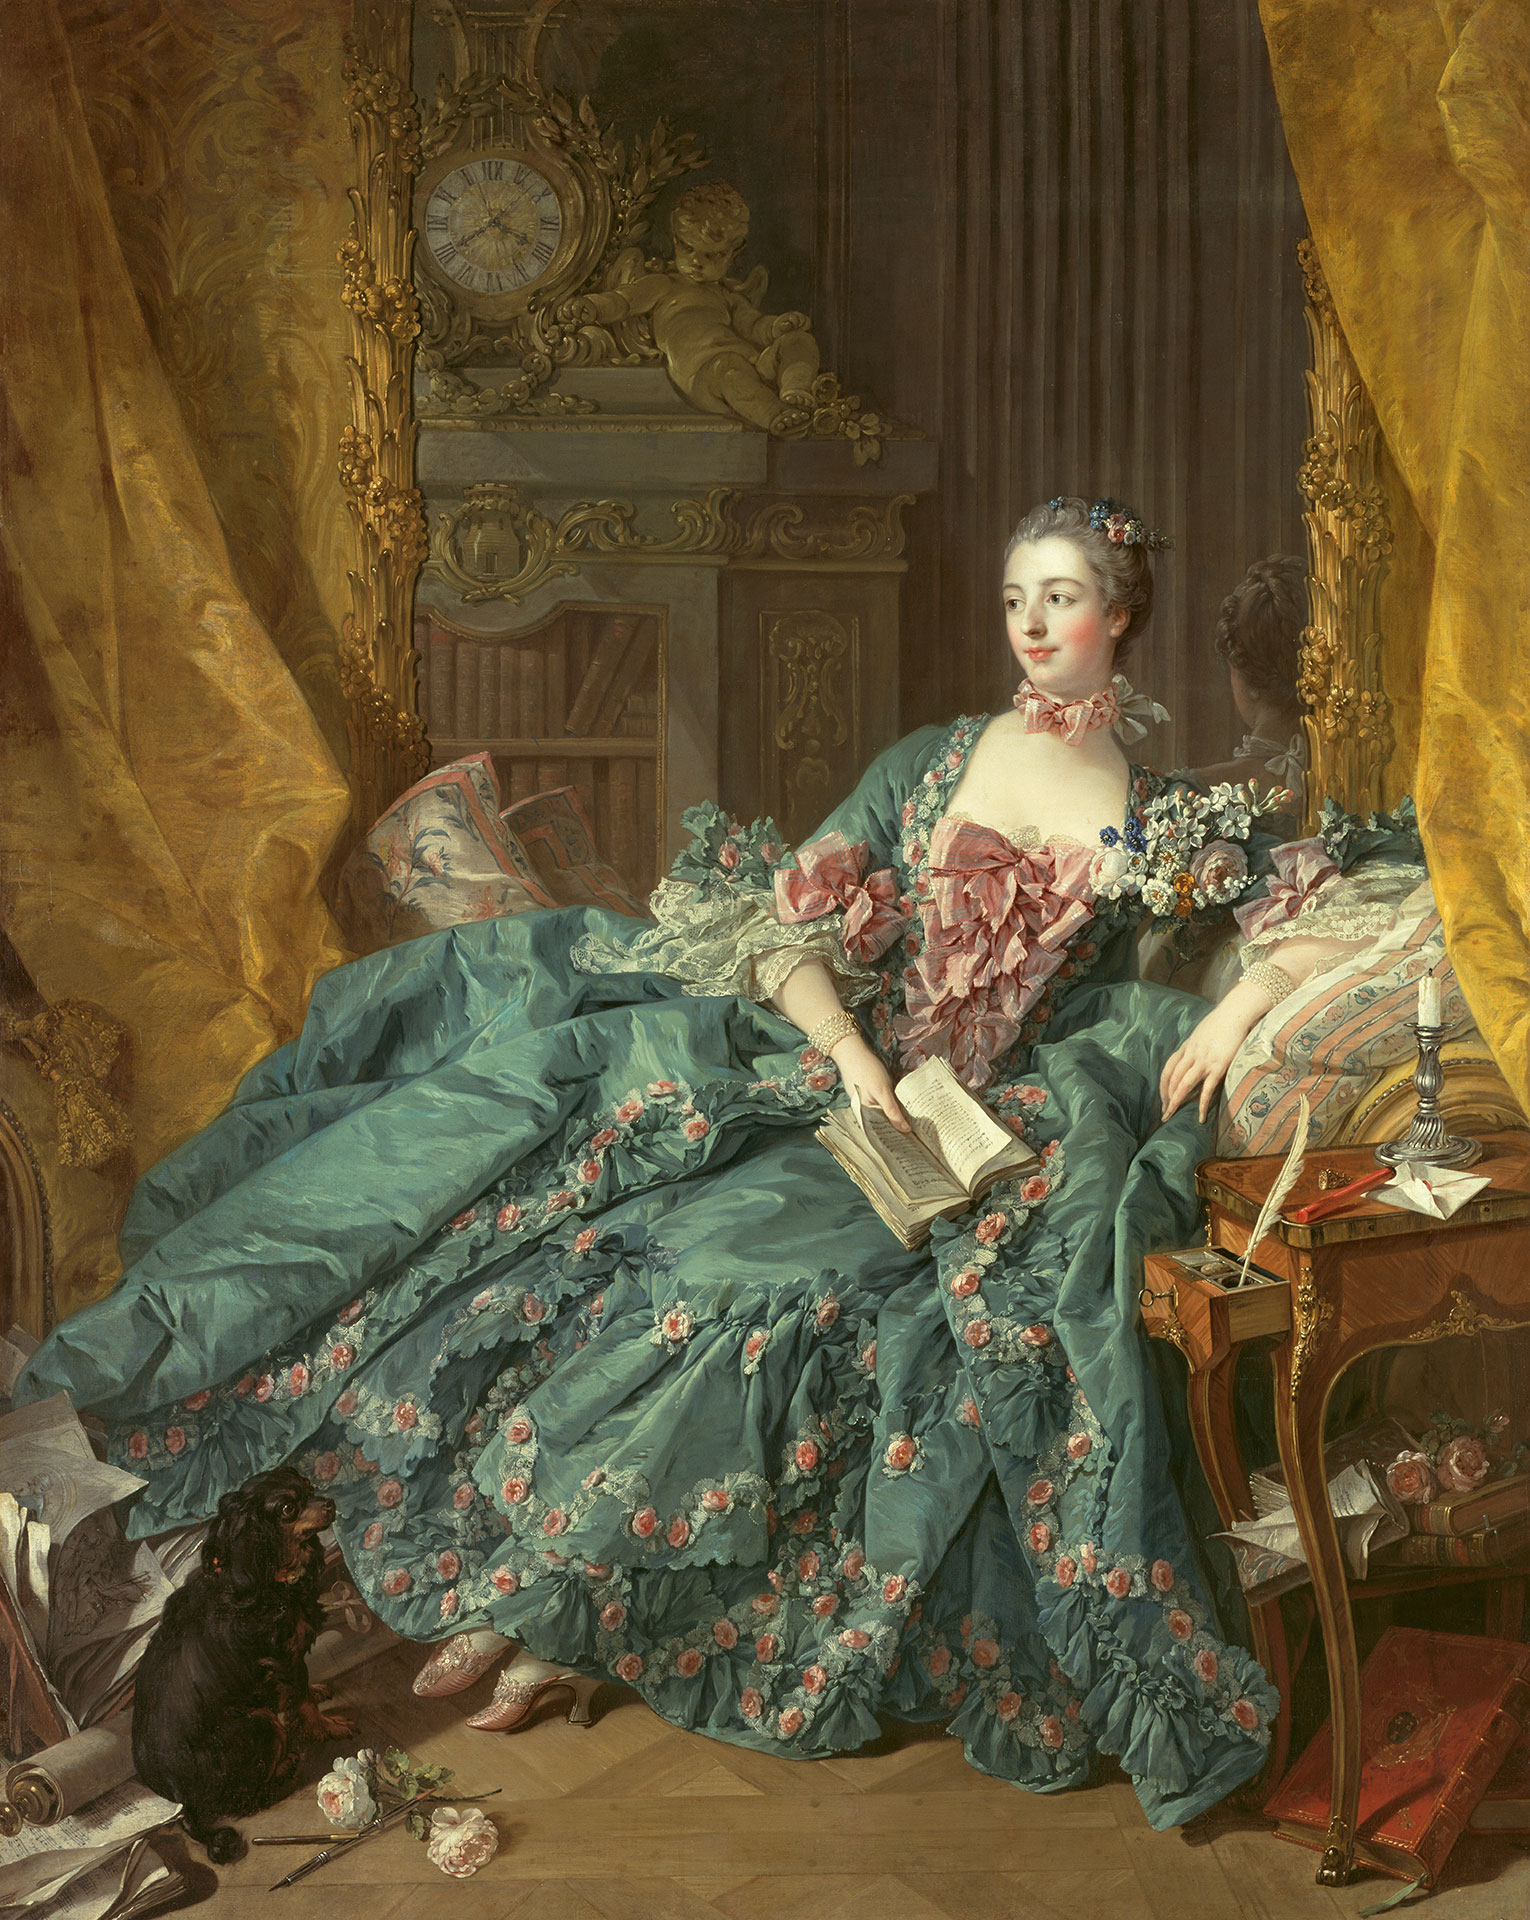 Gemälde Bildnis der Madame de Pompadour von François Boucher, entstanden 1756. Es zeigt Madame Pompadour in einem blauen Kleid auf einem Sessel ruhend. In ihrer rechten hält sie auf aufgeschlagenes Buch.